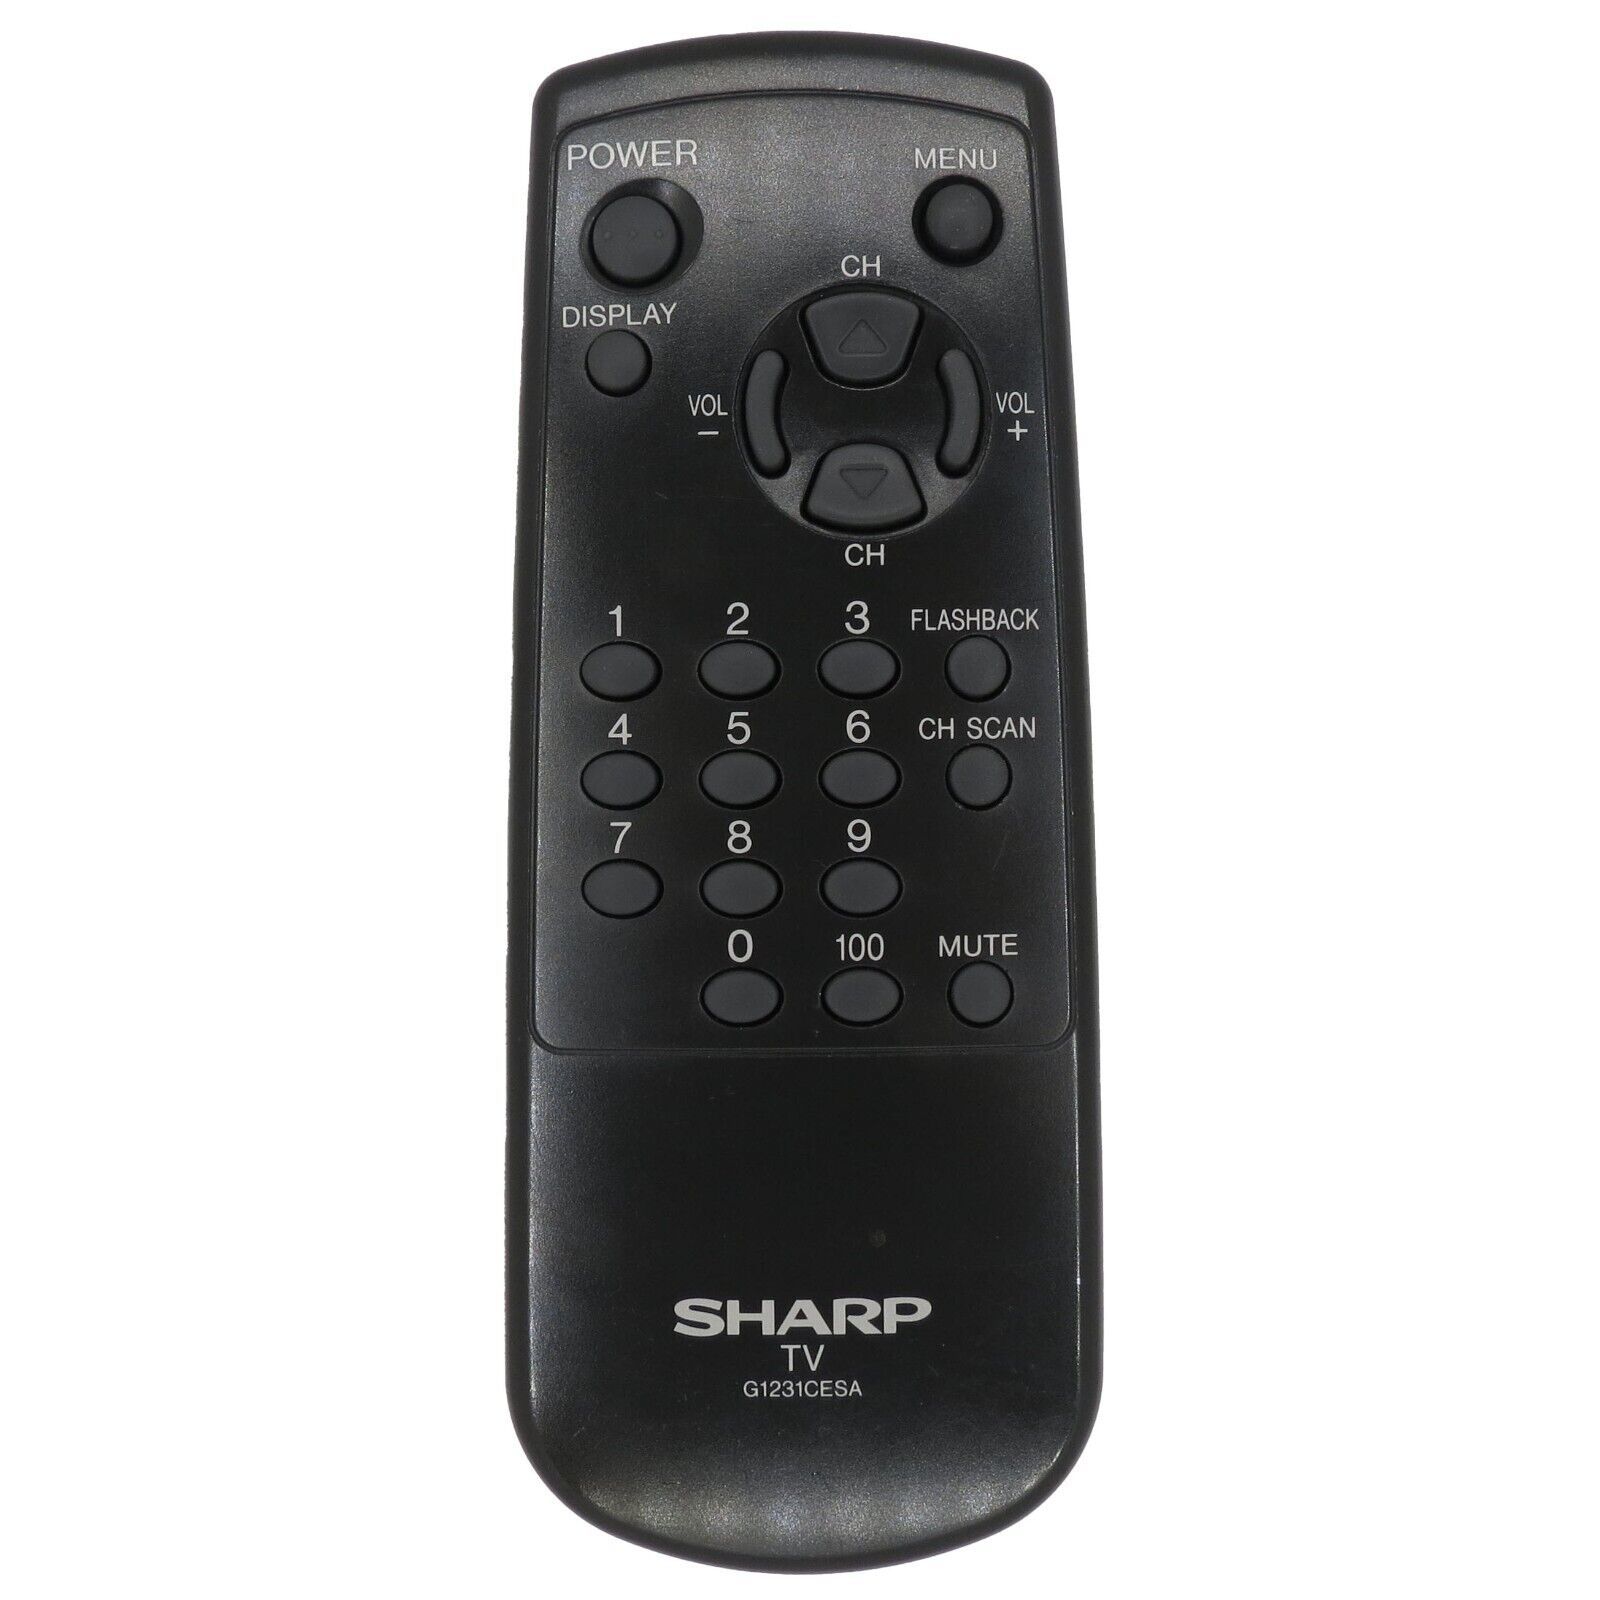 Primary image for Sharp G1231CESA Factory Original TV Remote 13GM60 19GM60, 20GN60, 25GM60, 25HM80